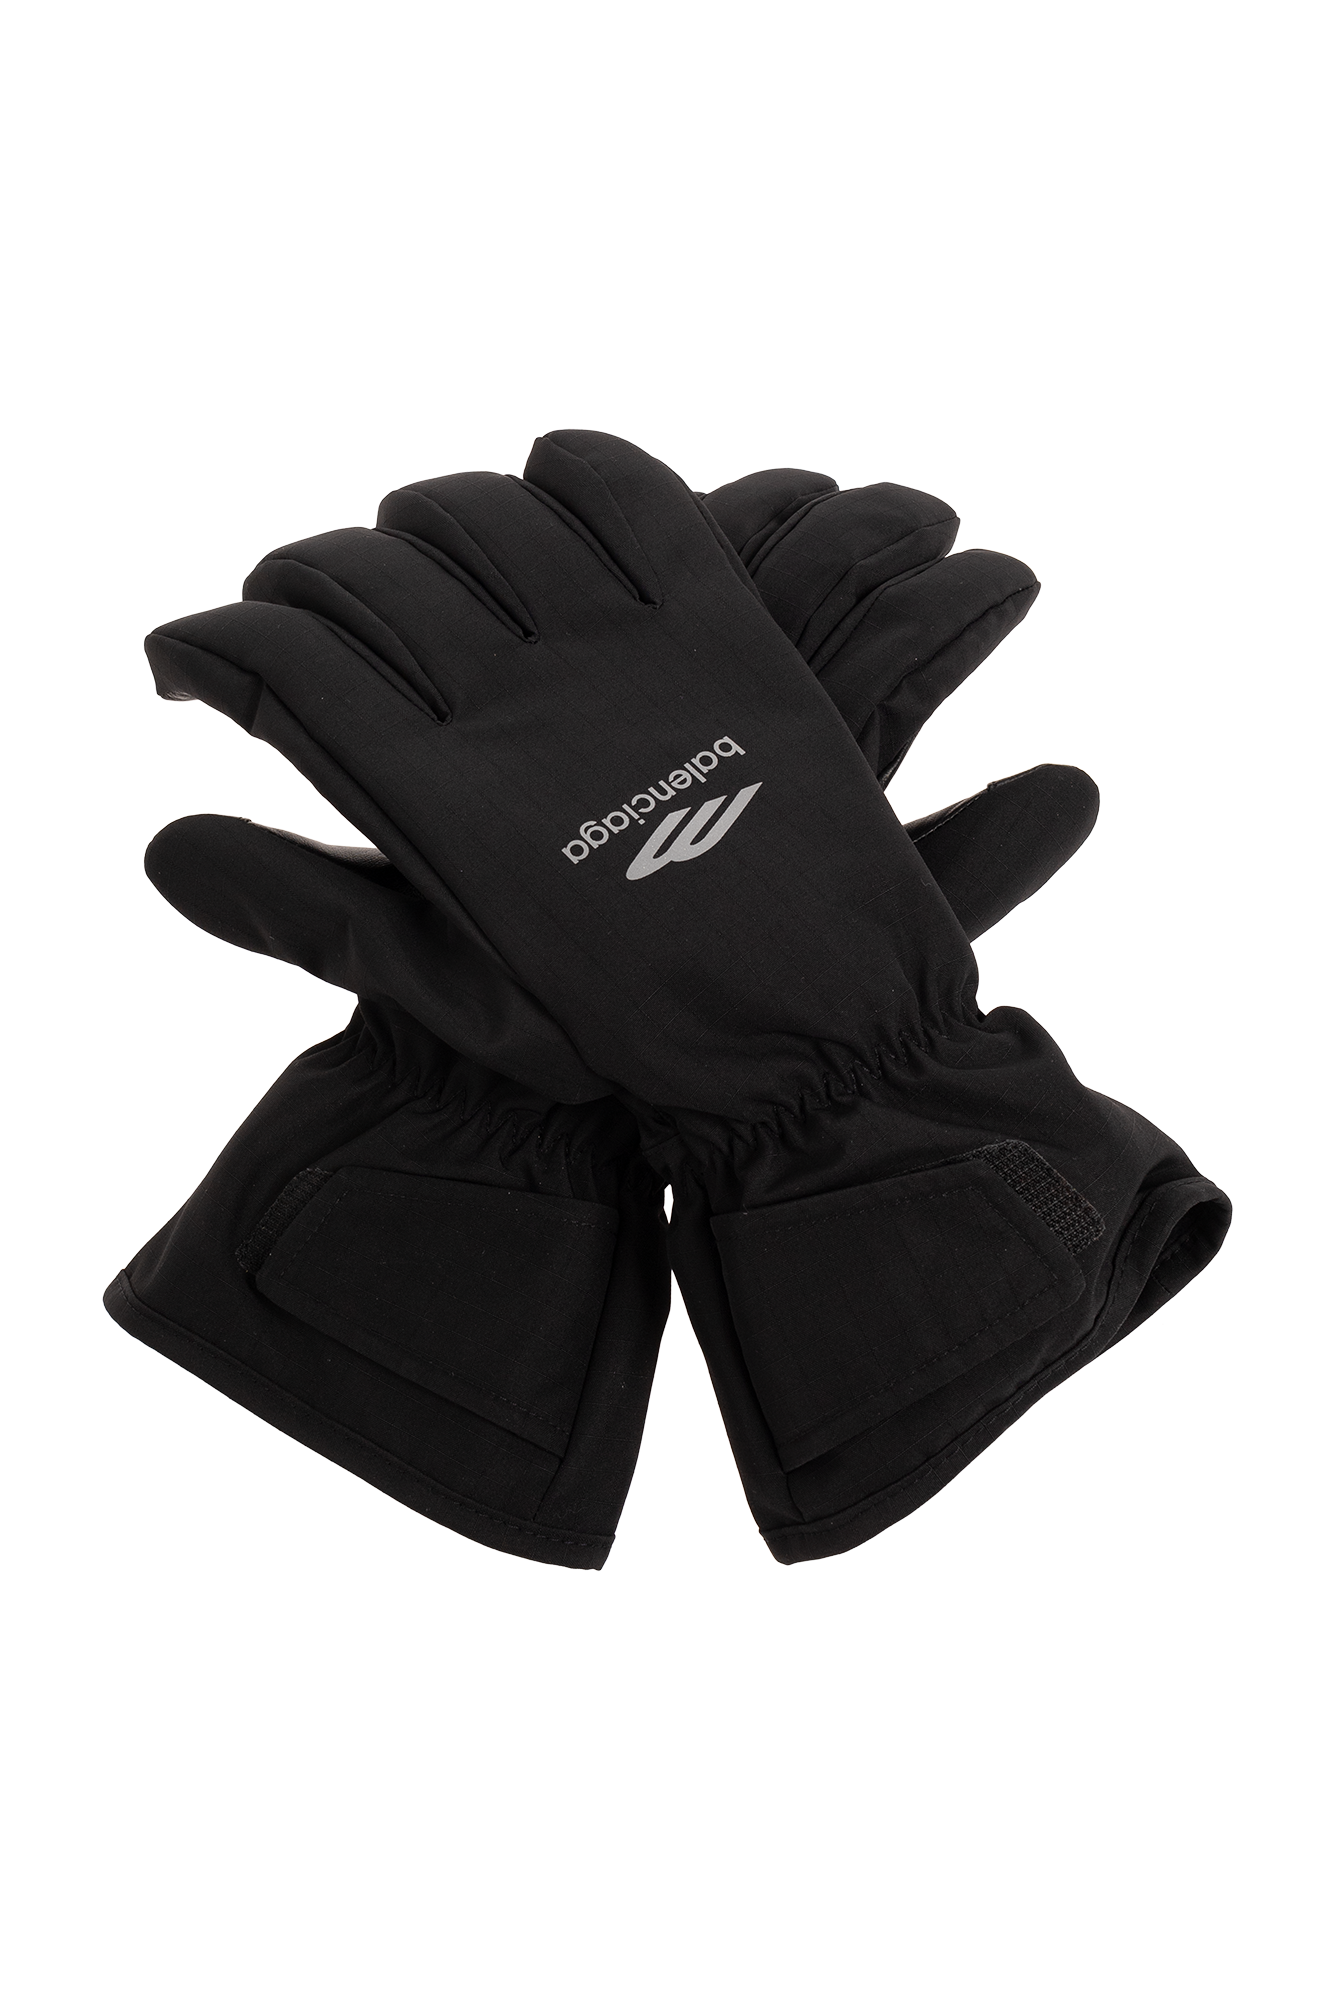 Balenciaga 'Skiwear' collection ski gloves with logo